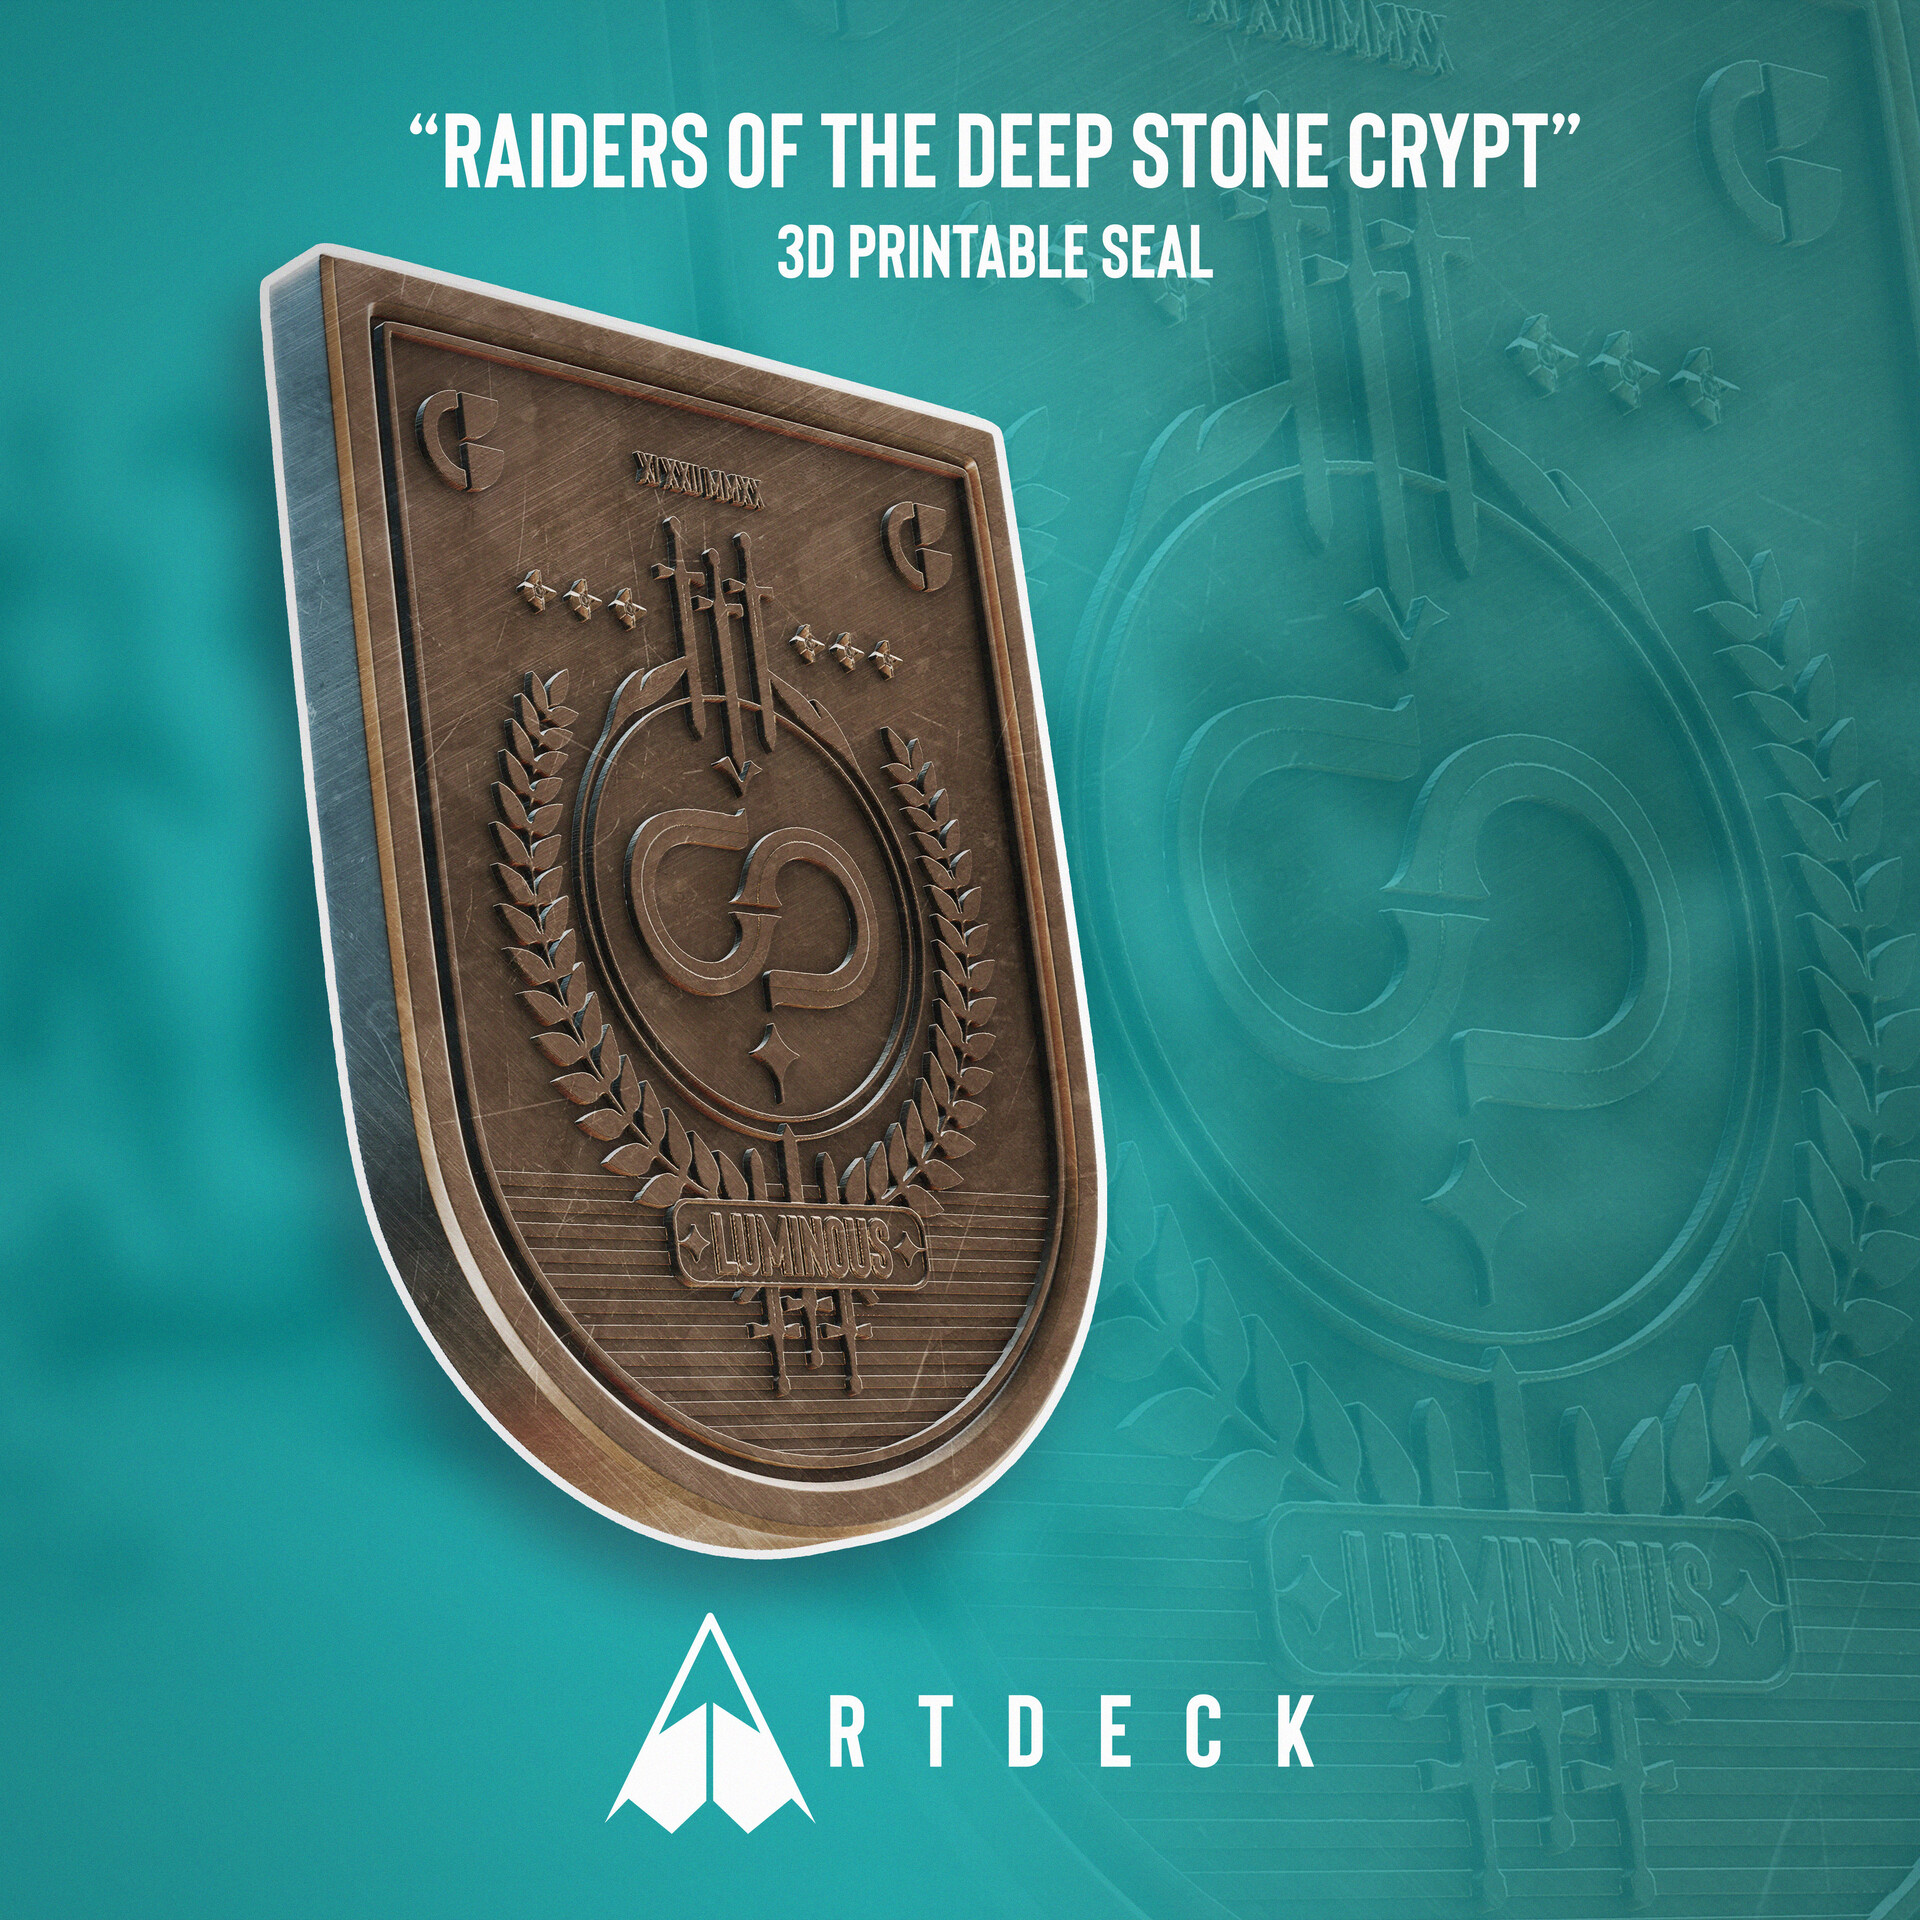 Deep stone. Deep Stone Crypt. Deep Stone Crypt Loot. Deep Stone Crypt Armor. Deep Stone Crypt logo.